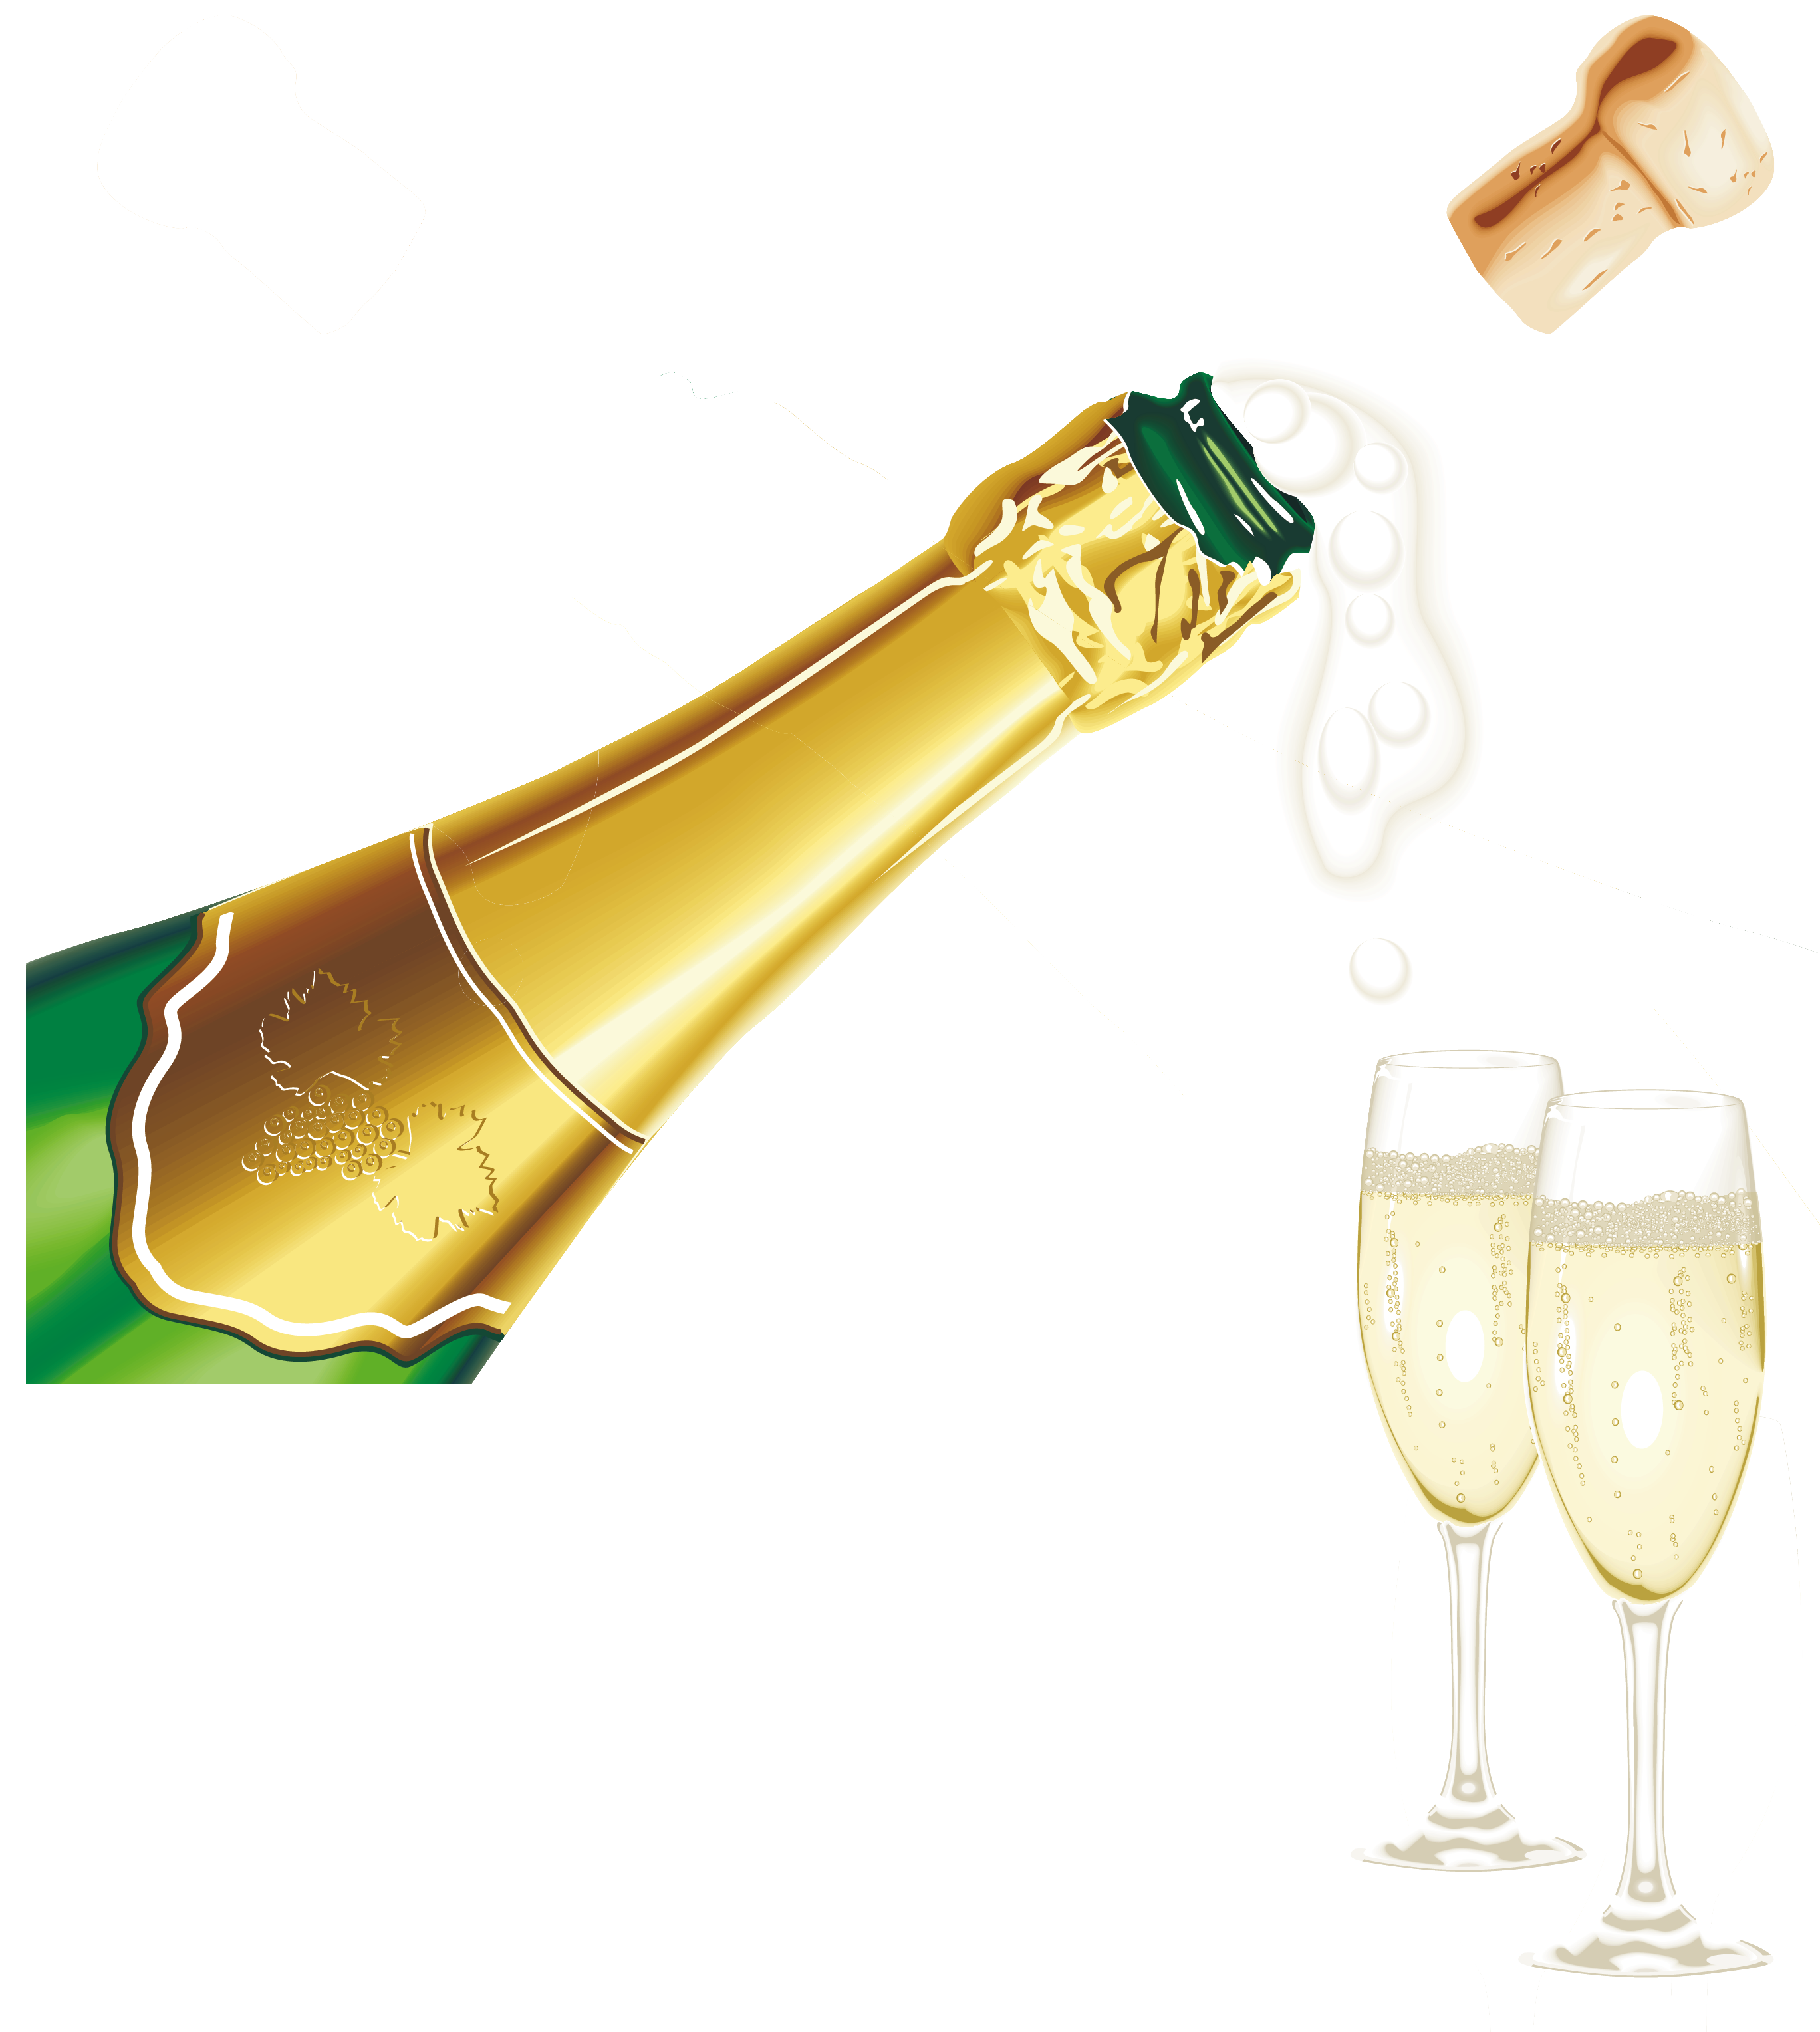 Шампанское бутылка PNG Image